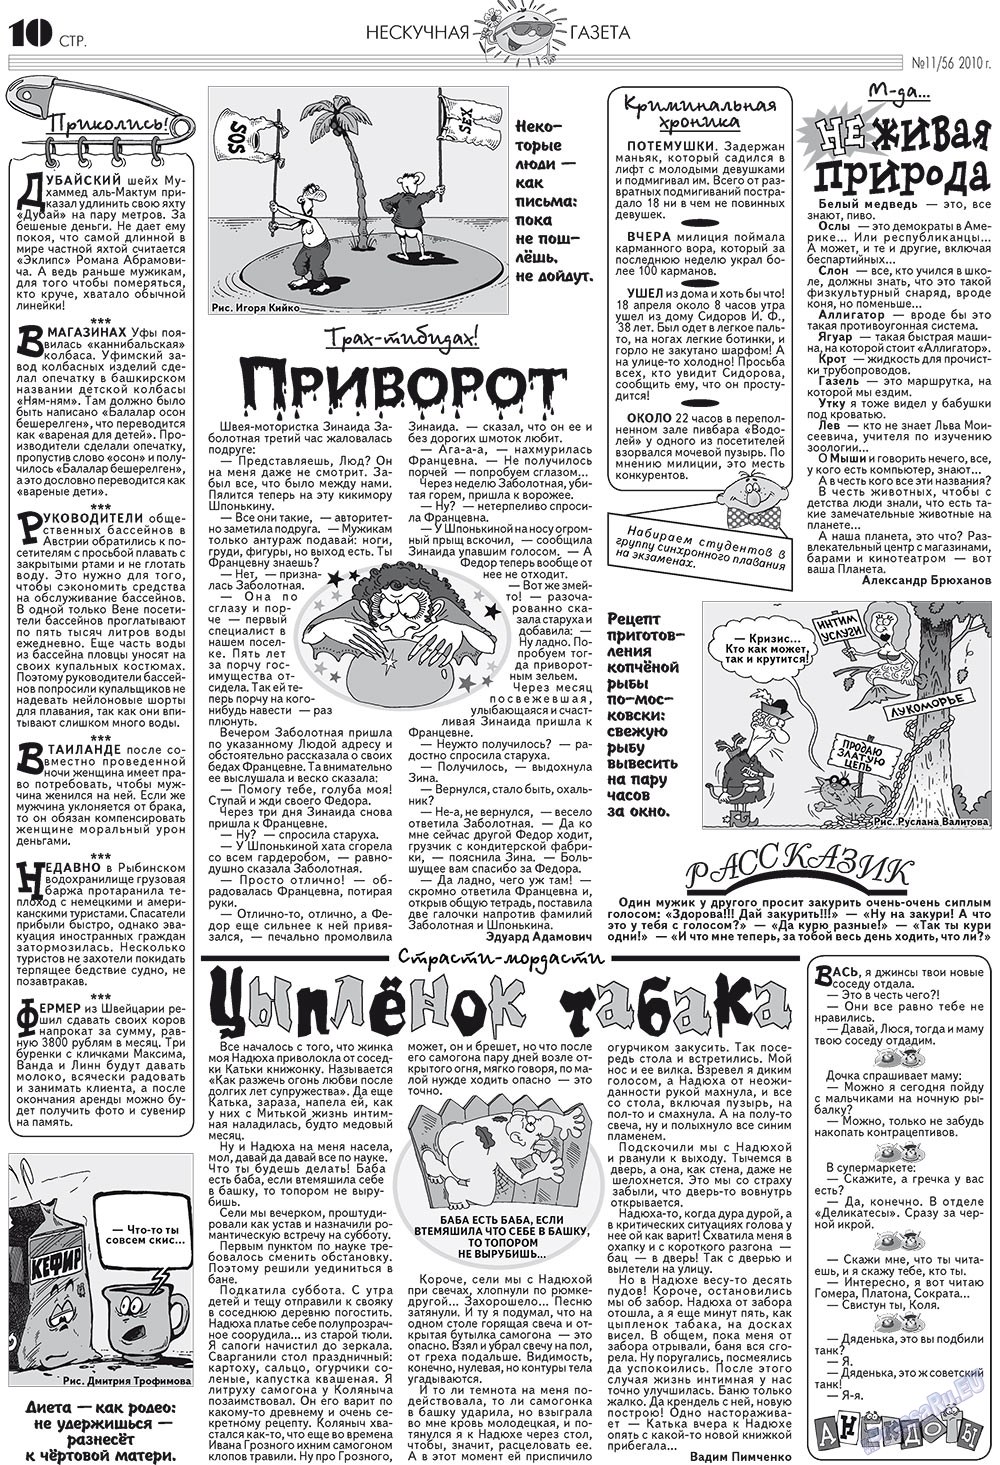 Нескучная газета, журнал. 2010 №11 стр.10